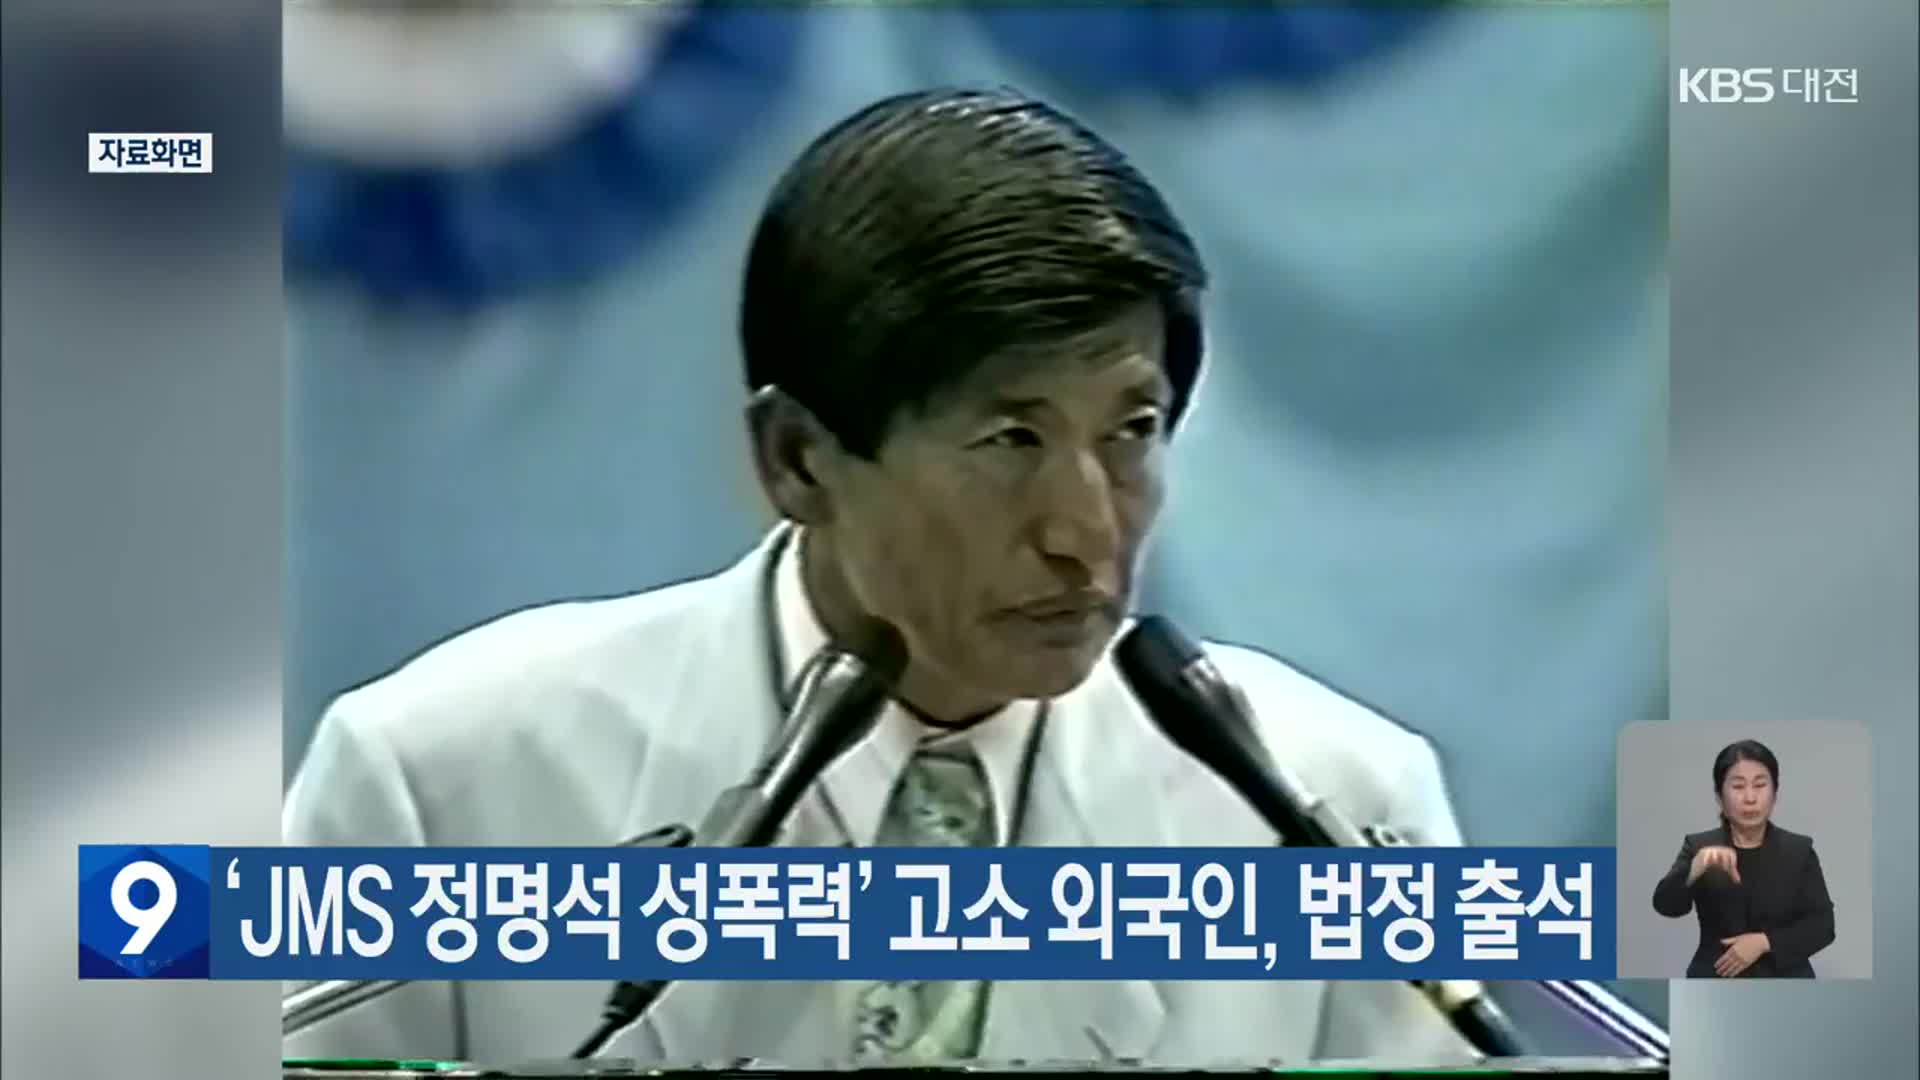 ‘JMS 정명석 성폭력’ 고소 외국인, 법정 출석